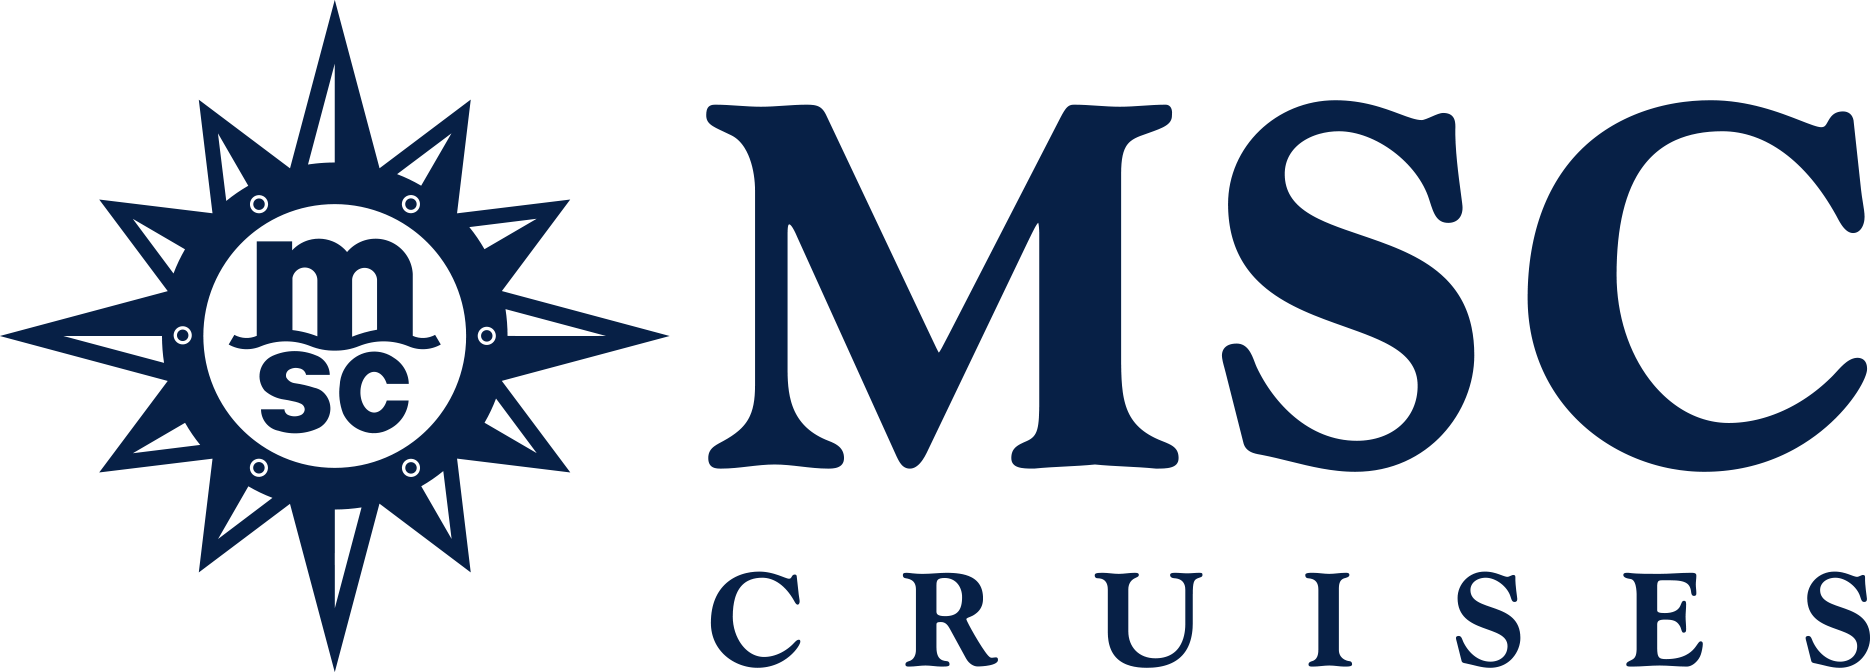 MSC Poesia Reederei Logo